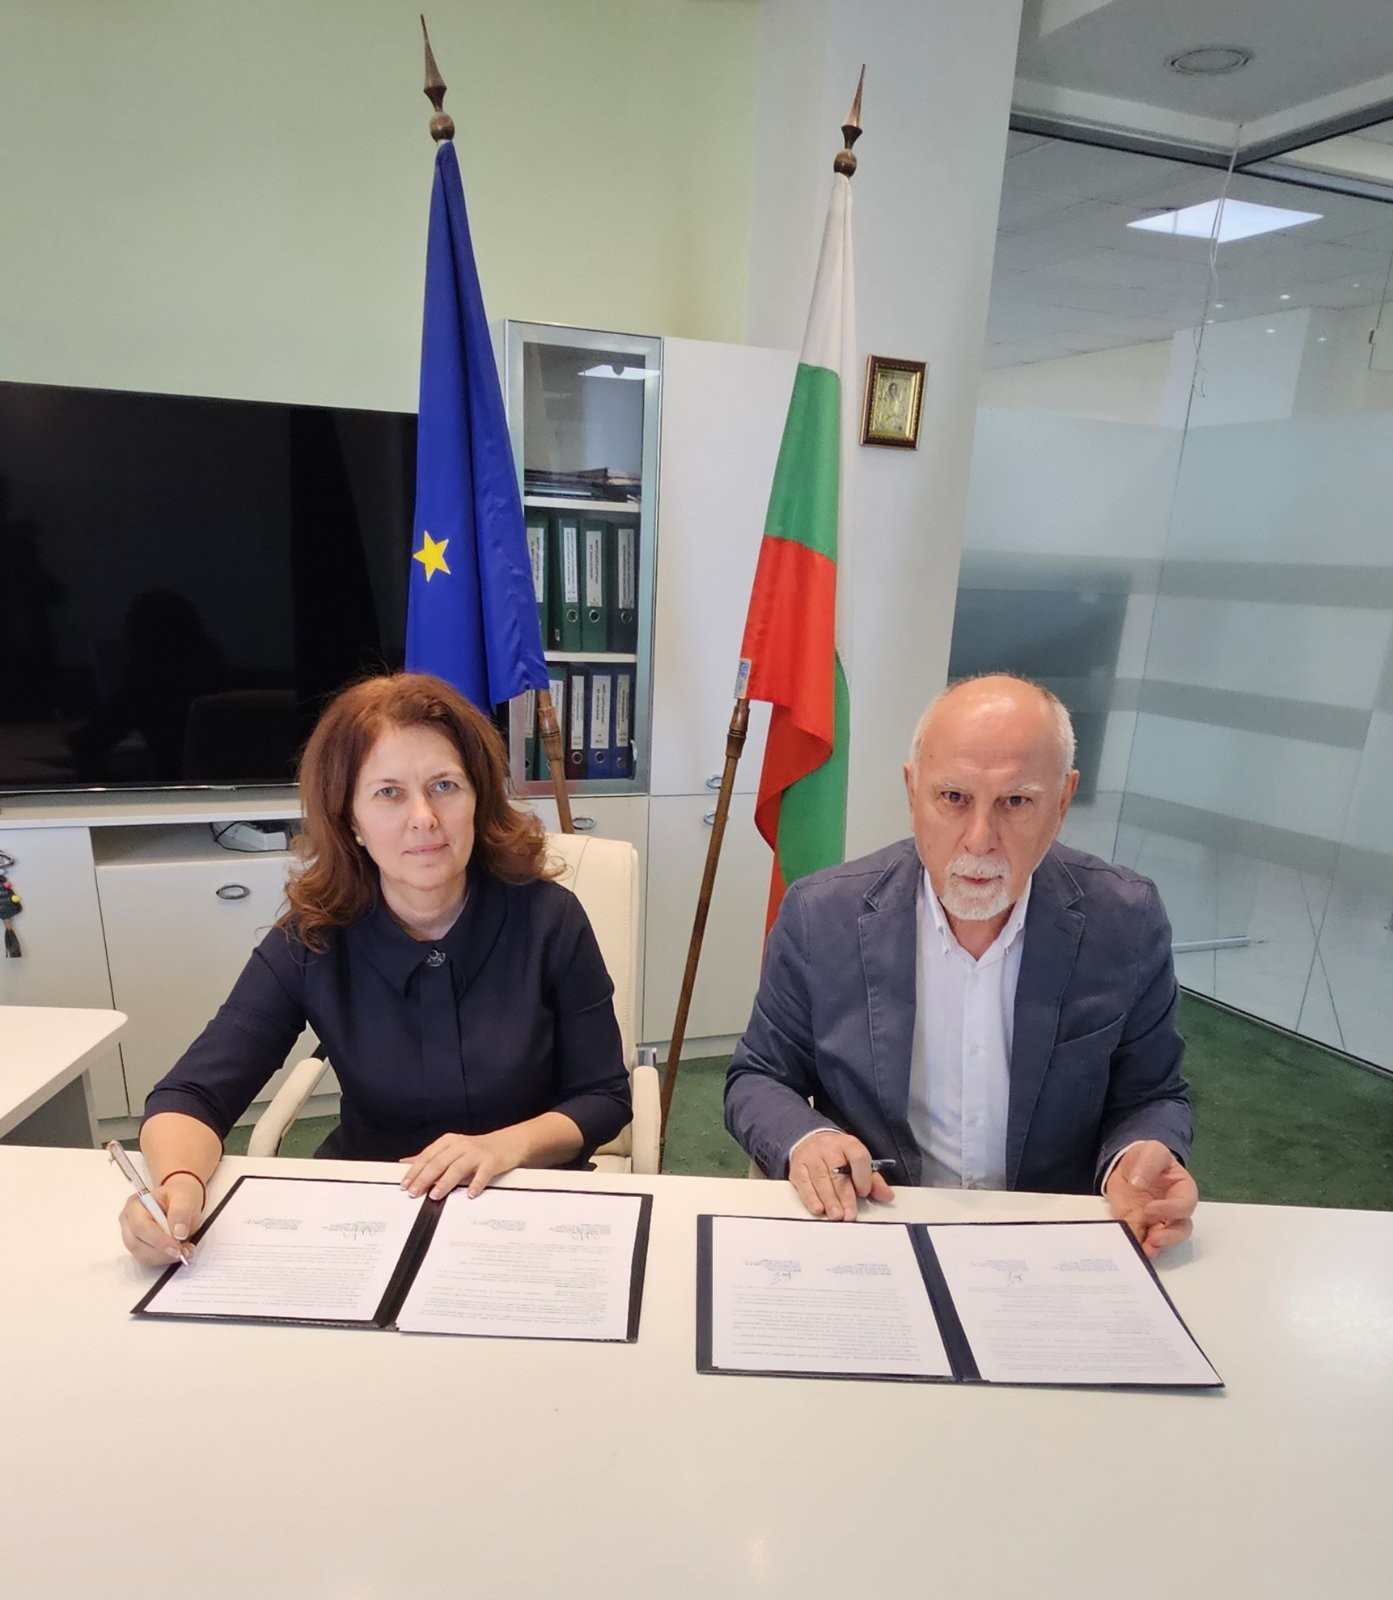 Изпълнителна агенция „Българска служба за акредитация“ и Български институт за стандартизация подписаха Меморандум за сътрудничество и партньорство